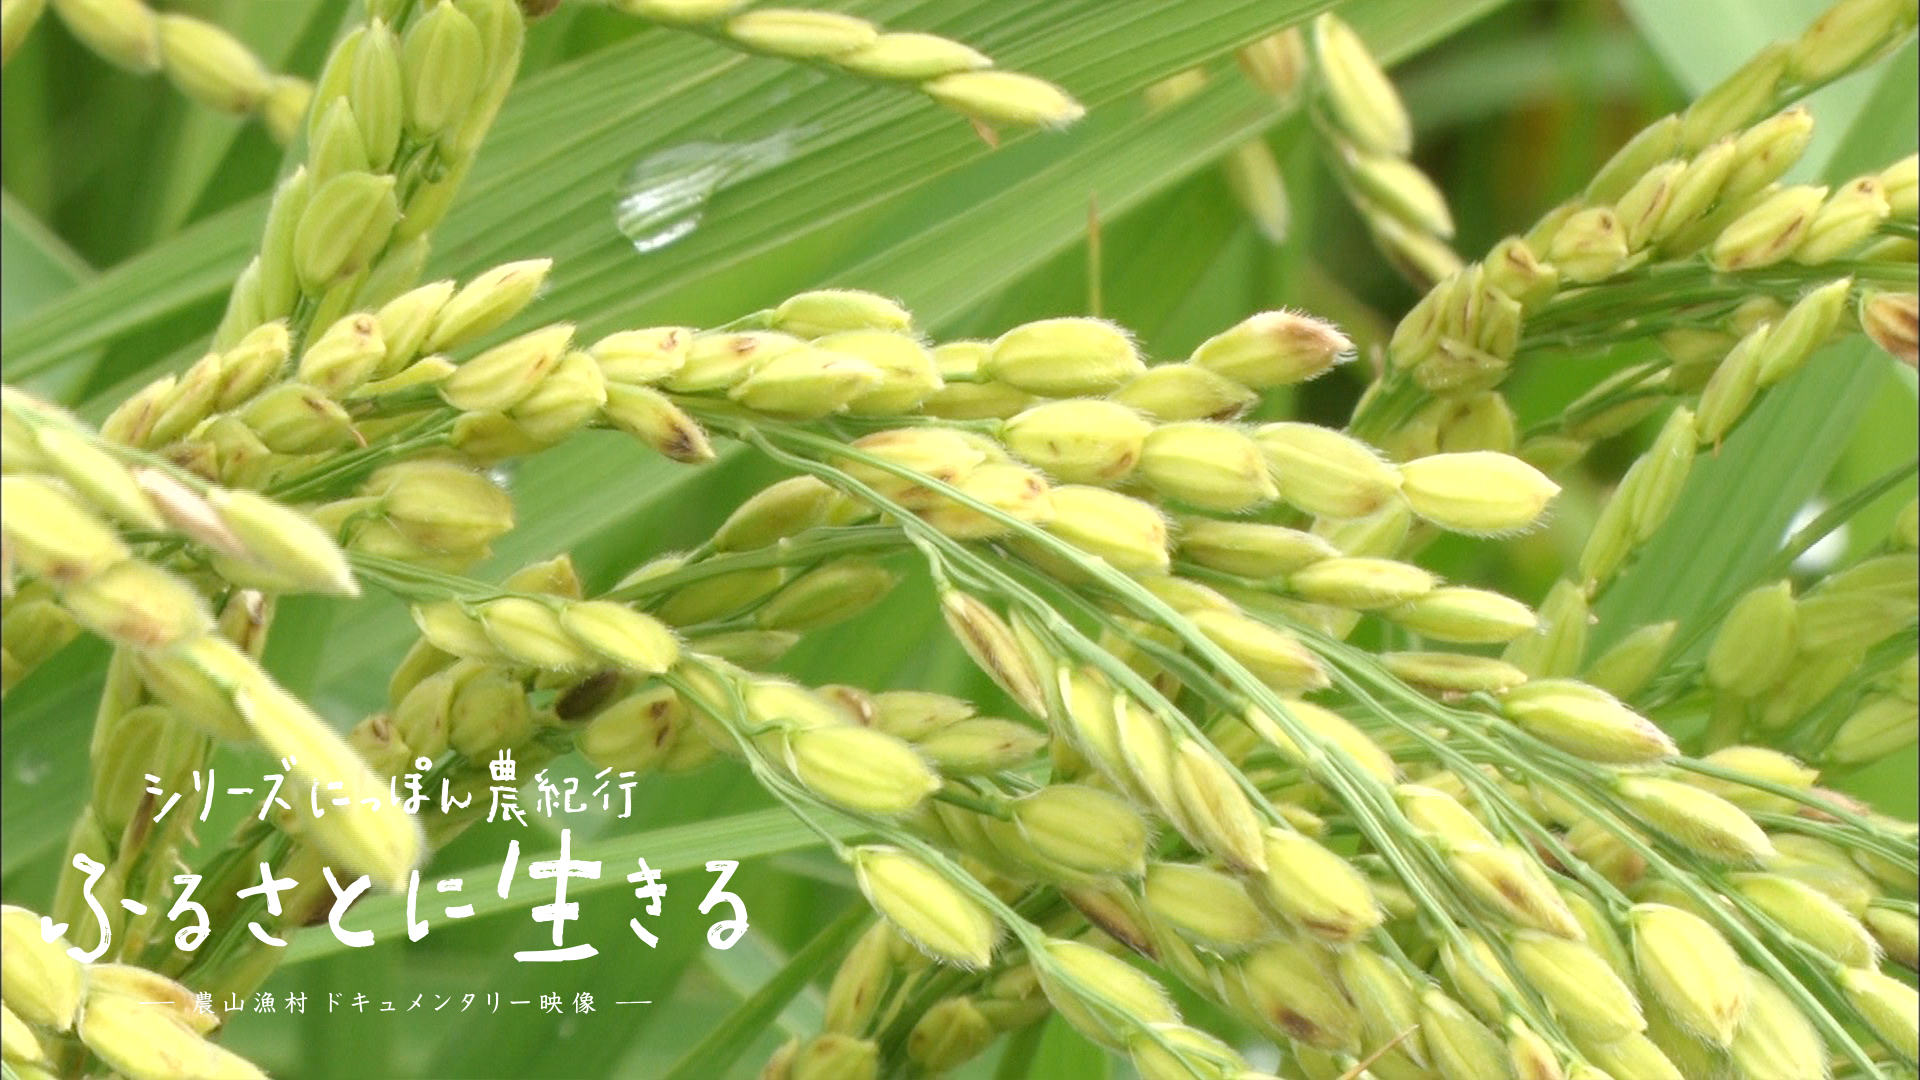 04 夏の田んぼ 育みの季節 滋賀県 にっぽん農紀行 ふるさとに生きる